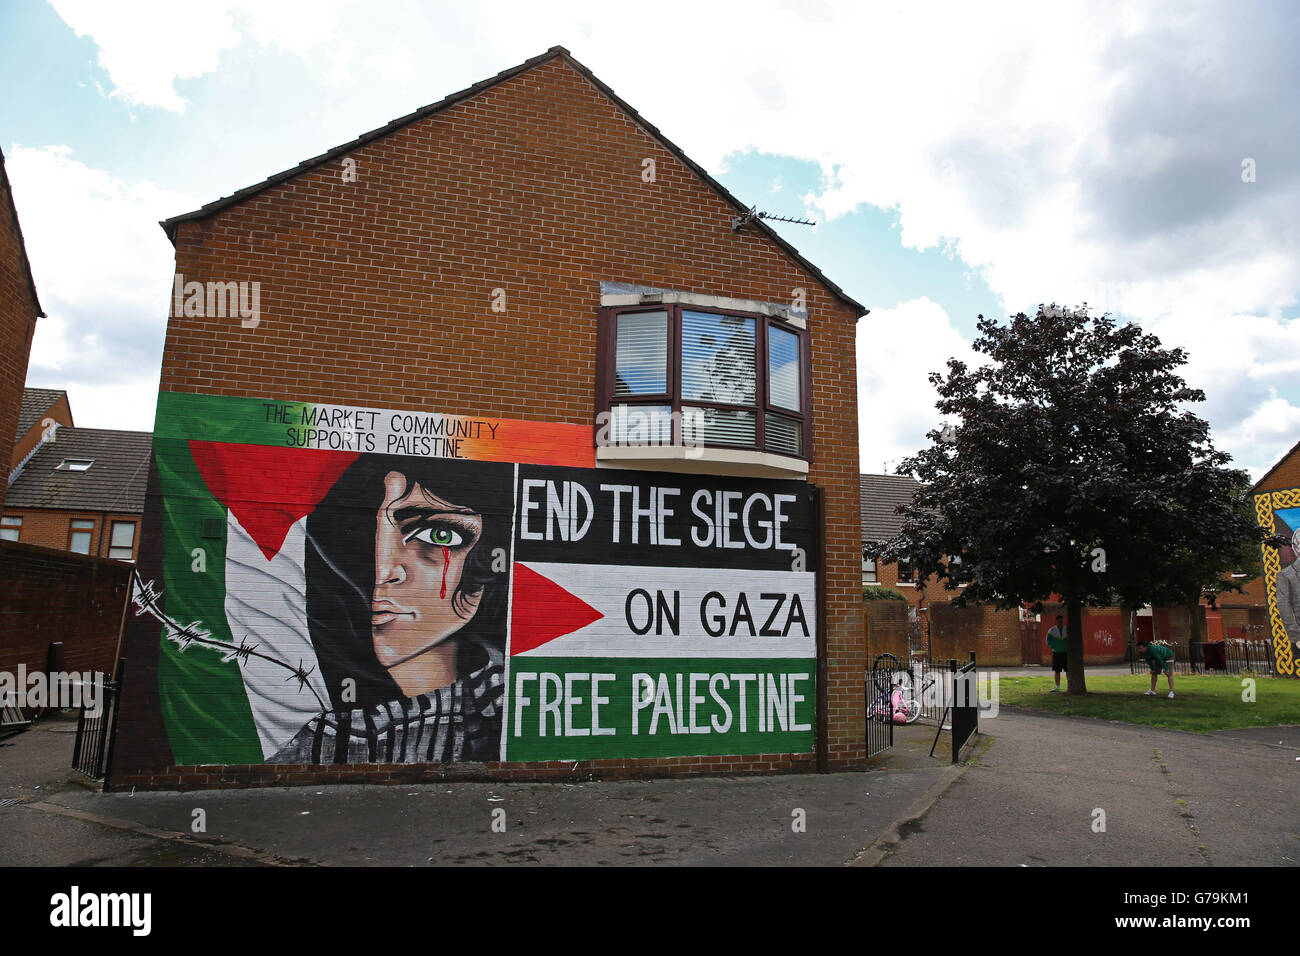 Ein Wandgemälde pro Palästina in Belfast, als loyalistische und republikanische Gruppen während des aktuellen Aufflackers des Konflikts rivalisierende Positionen zur Unterstützung Israels und Palästinas einnehmen. Stockfoto